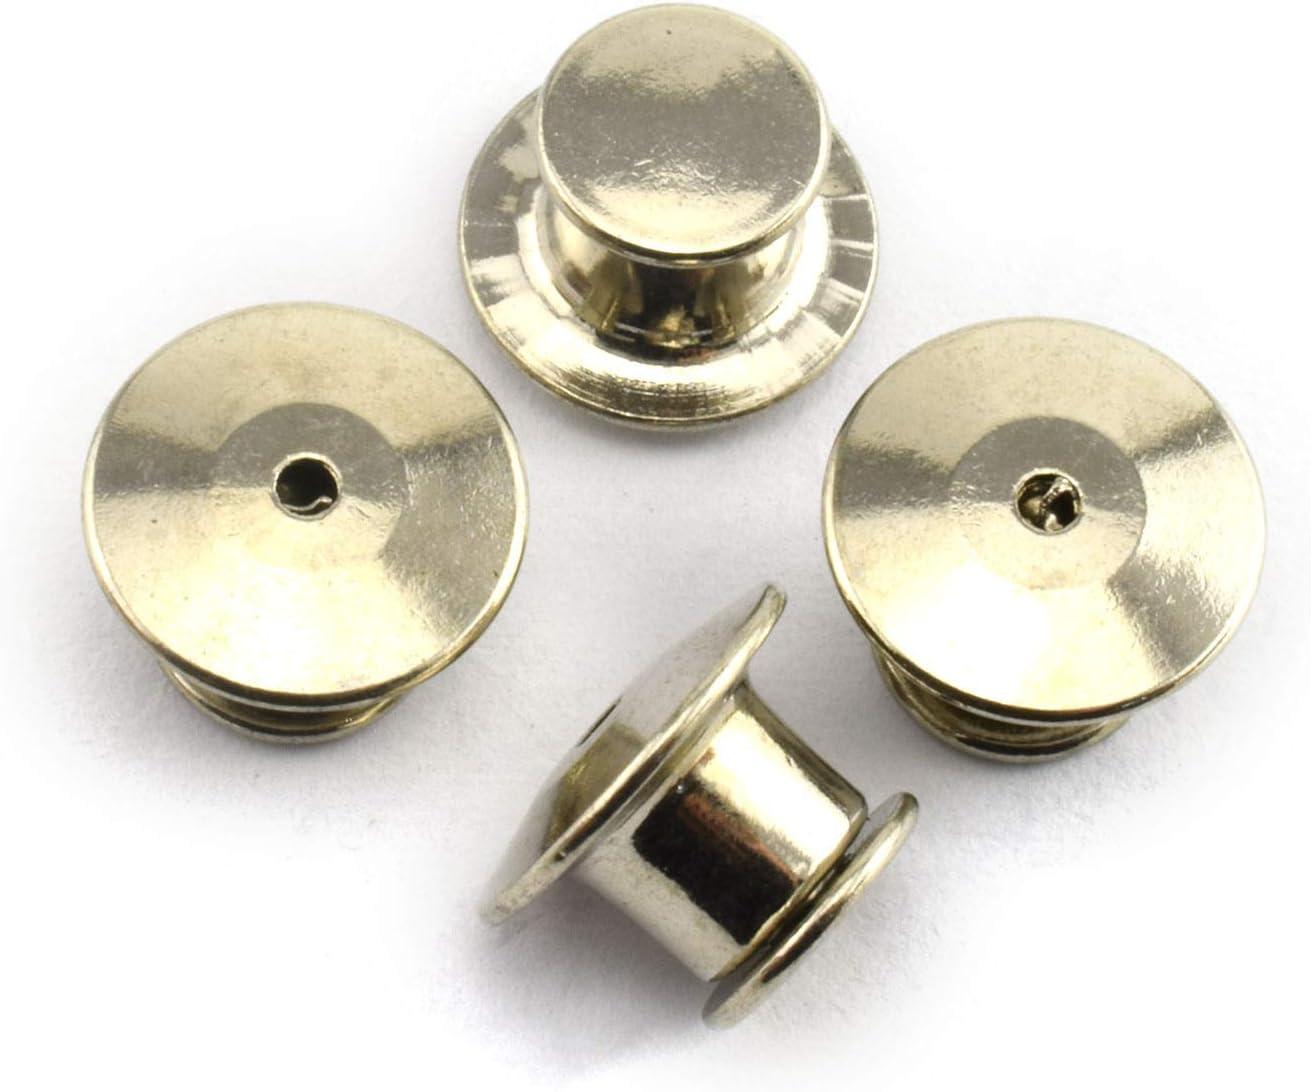 30 Pieces Metal Locking Pin Backs Locking Pin Keepers Locking Backs for  Disney Pins Locking Clasp Lapel Pin Backs Locking No Tool Required Suitable